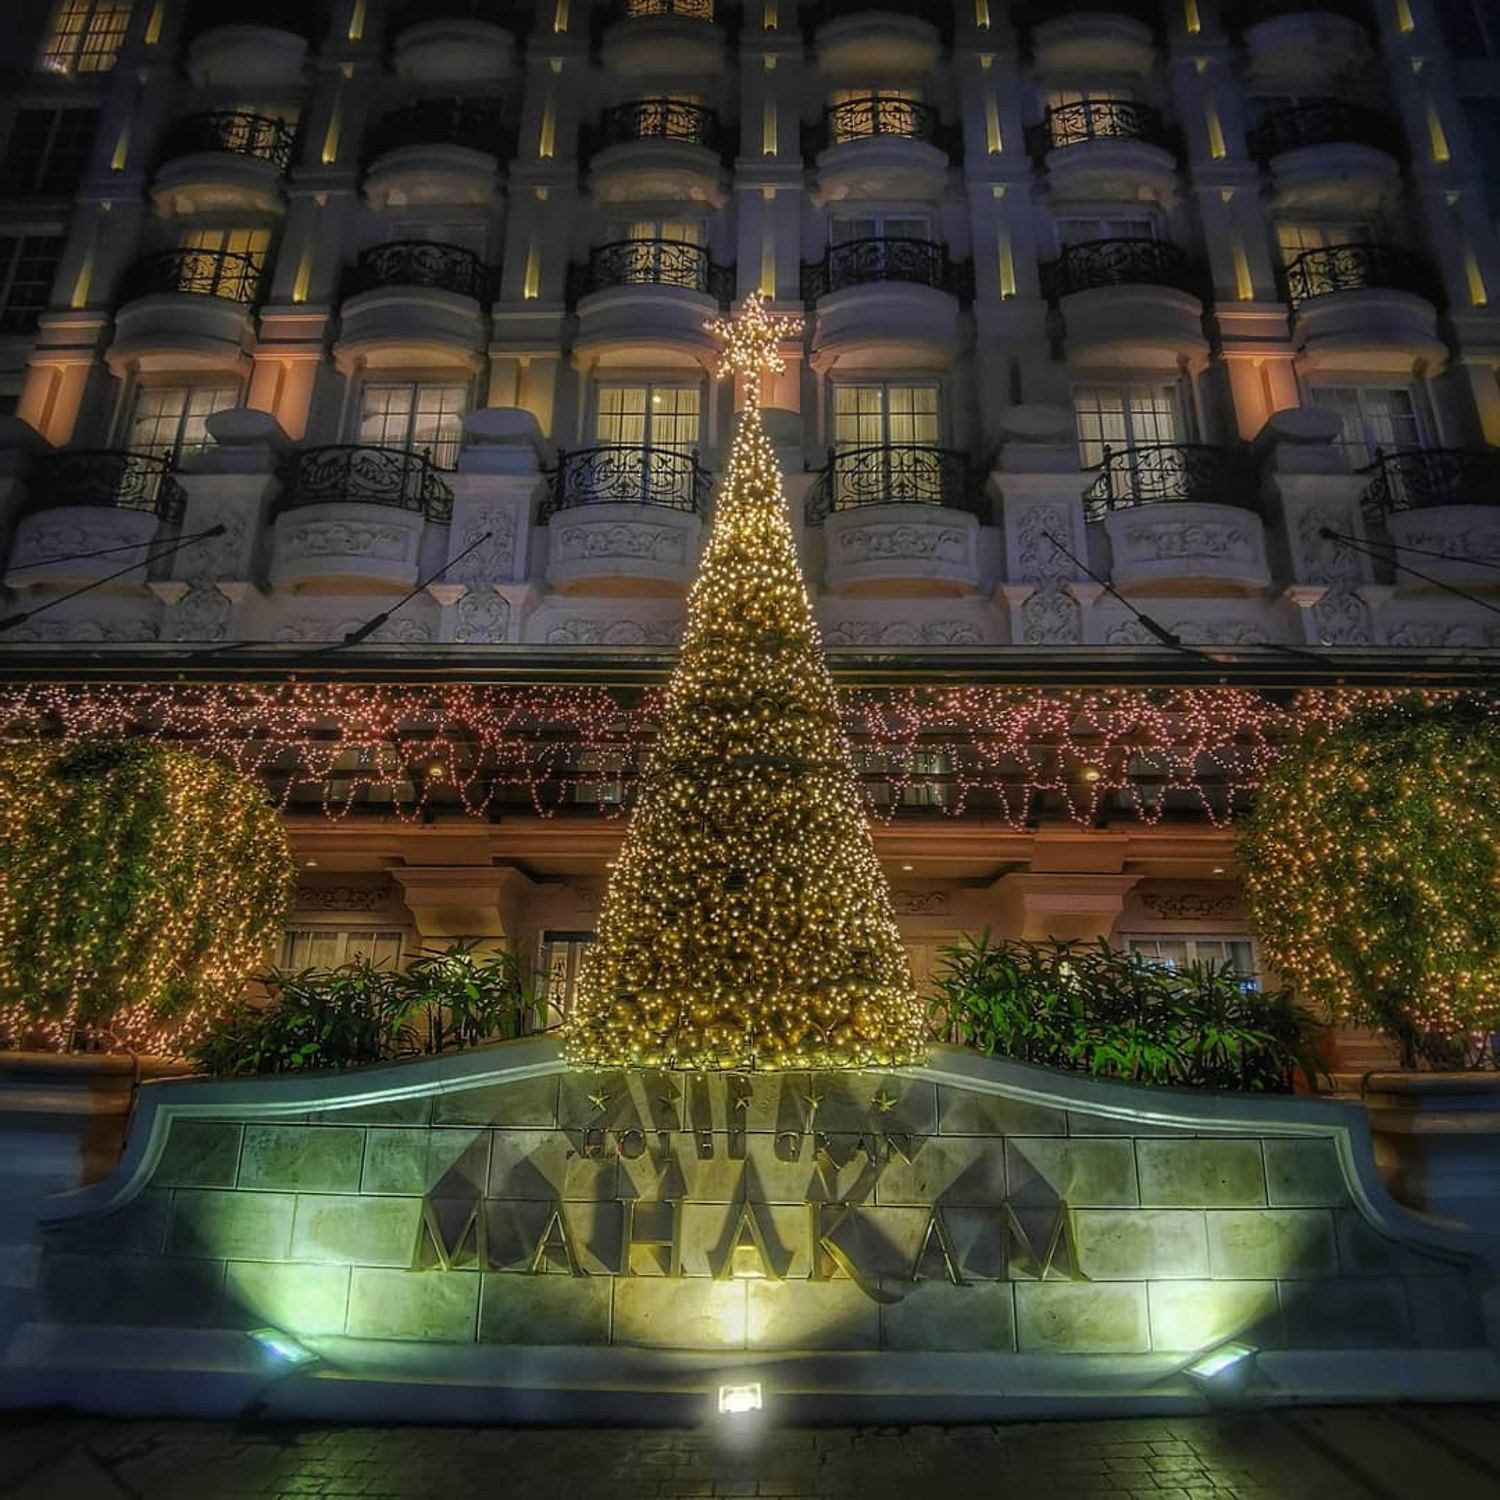 6 Hotel di Jakarta dengan Dekorasi Natal yang Unik